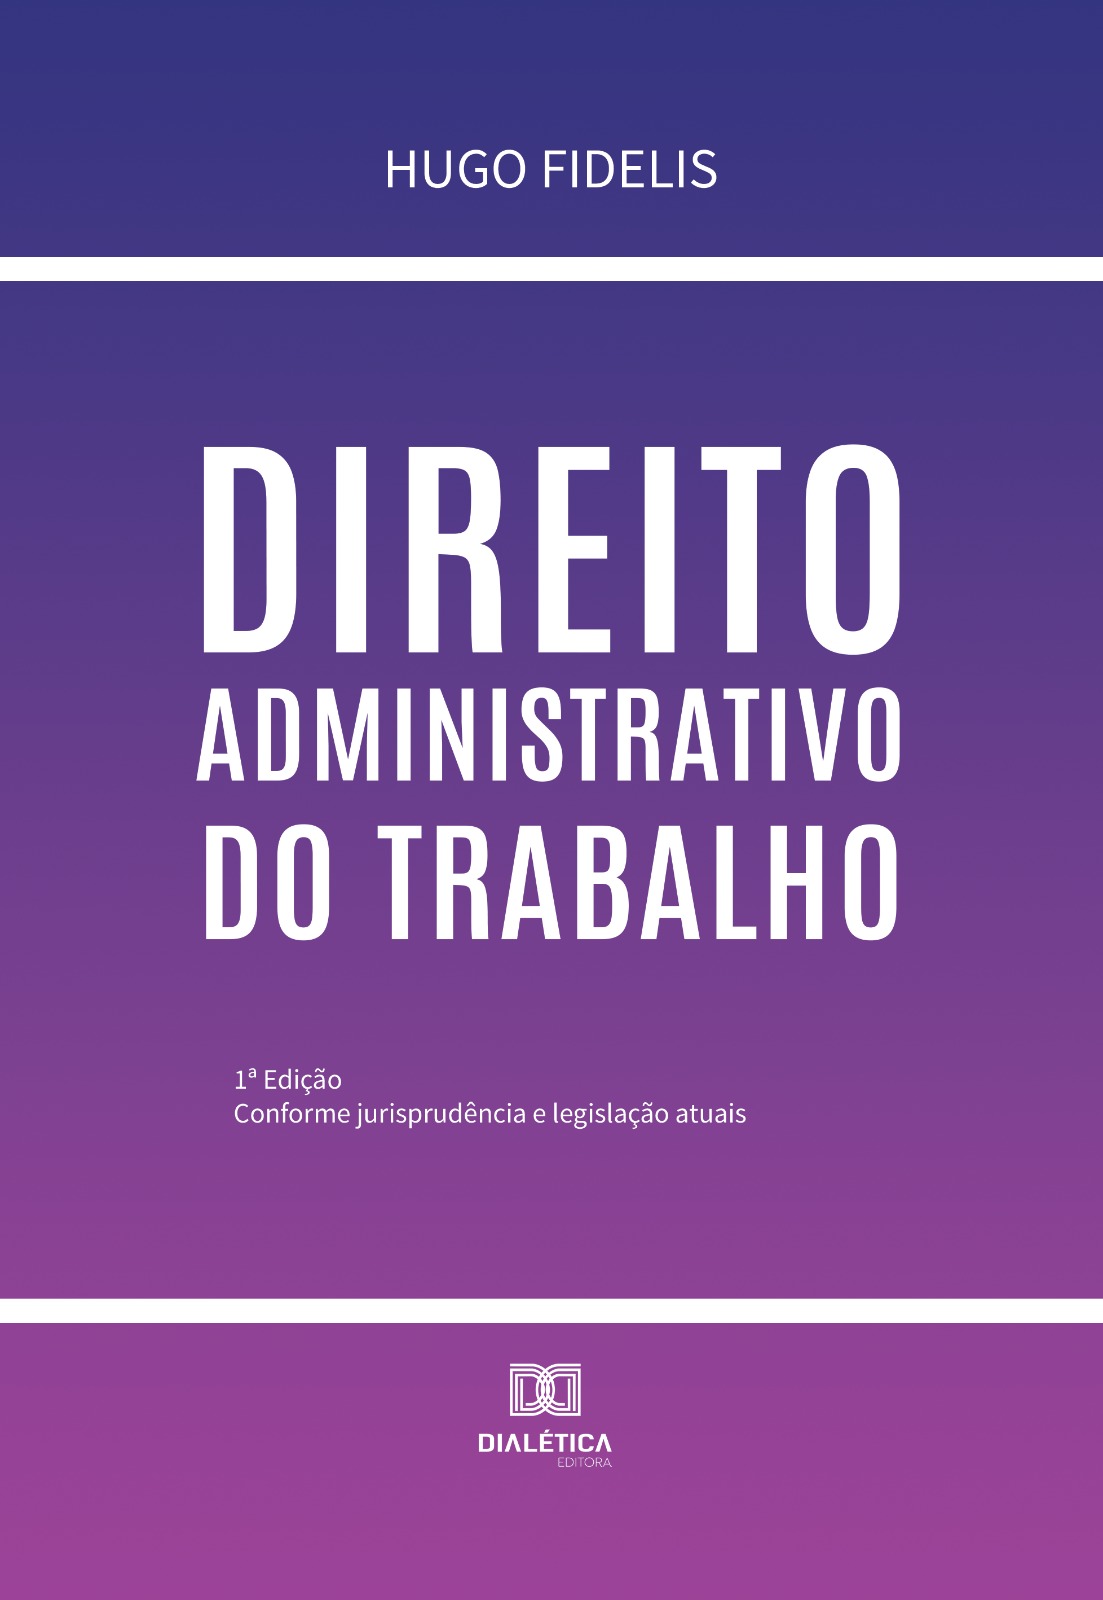 Procurador do Distrito Federal Hugo Fidelis lança livro sobre direito administrativo do trabalho nesta quarta-feira (27)